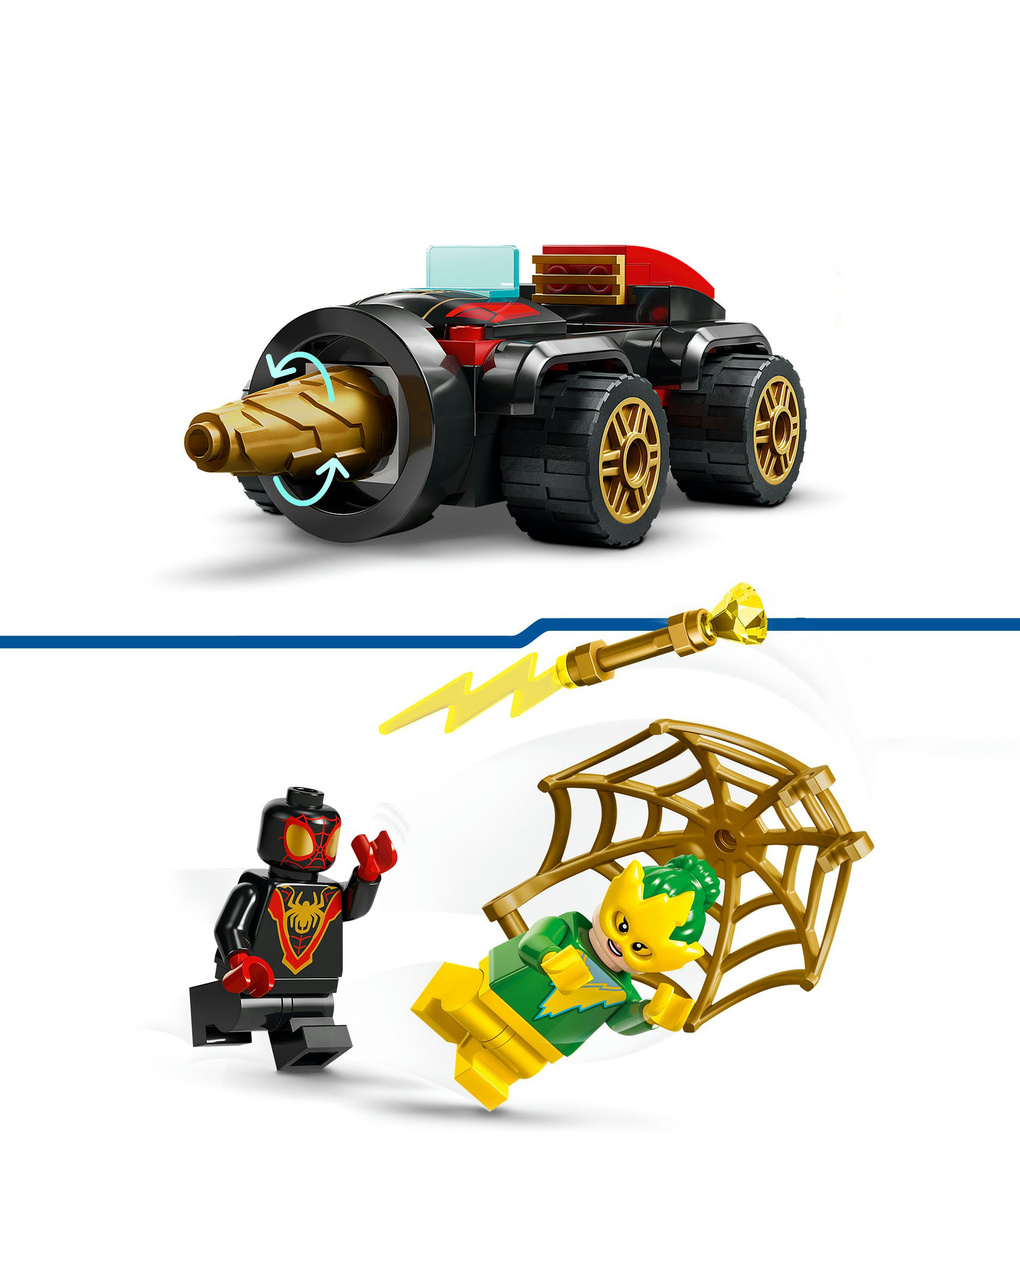 Spidey e i suoi fantastici amici veicolo trivella di spider-man  10792  - lego